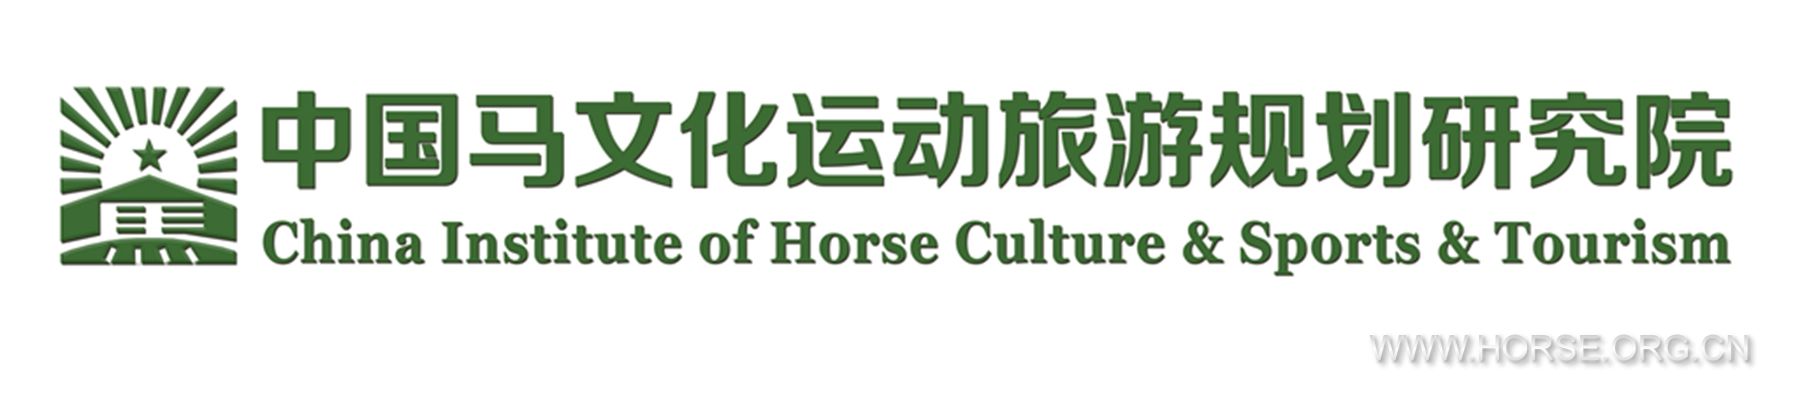 马文化研究院logo.jpg